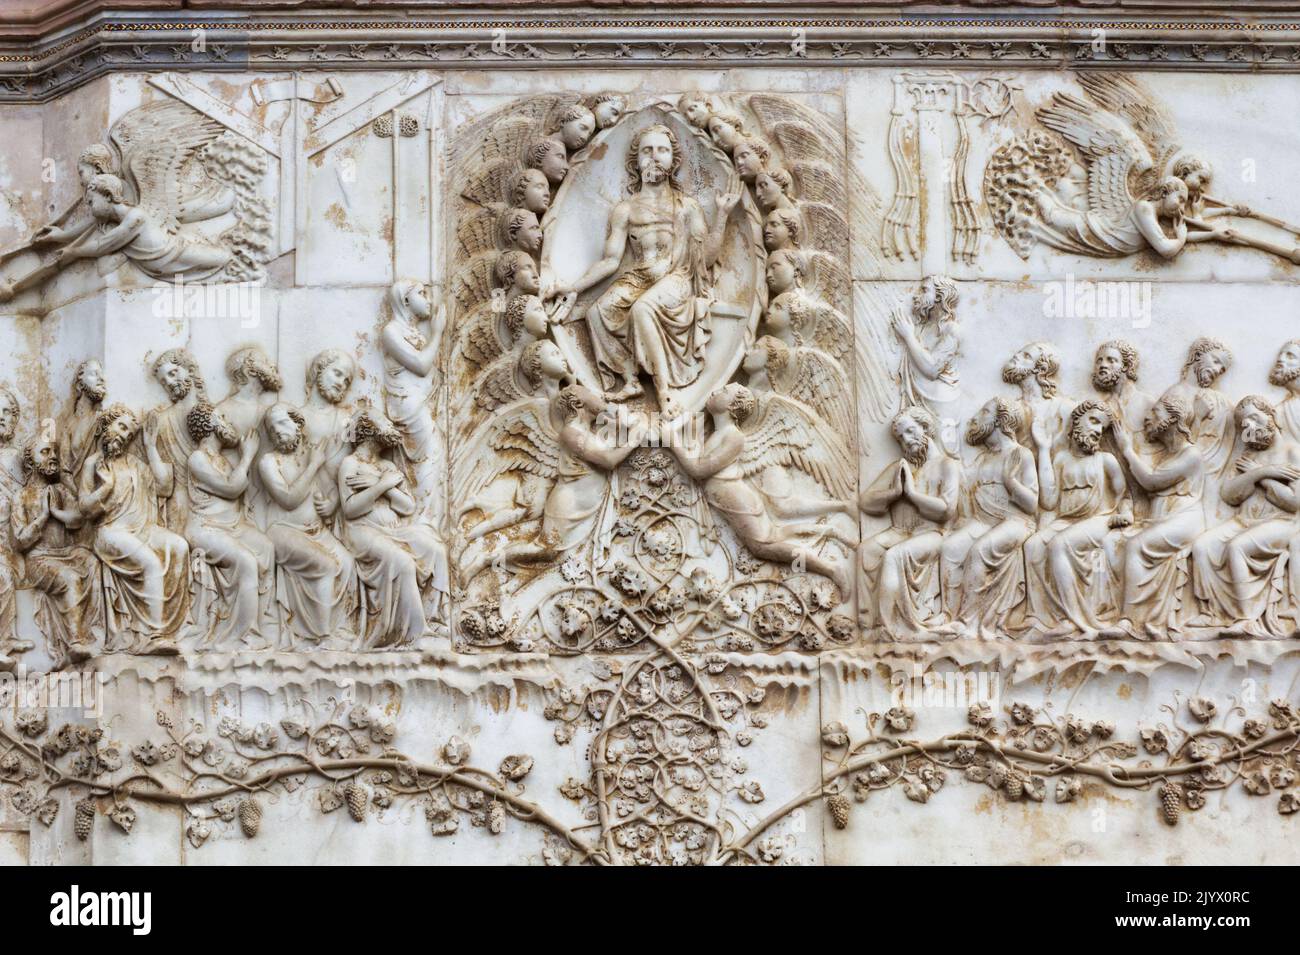 Ultimo Giudizio, Apocalisse (di Lorenzo Maitani, 14th° secolo) - dettaglio - bassorilievo dal 4th° pilastro - facciata della cattedrale di Orvieto - Umbria - Italia Foto Stock